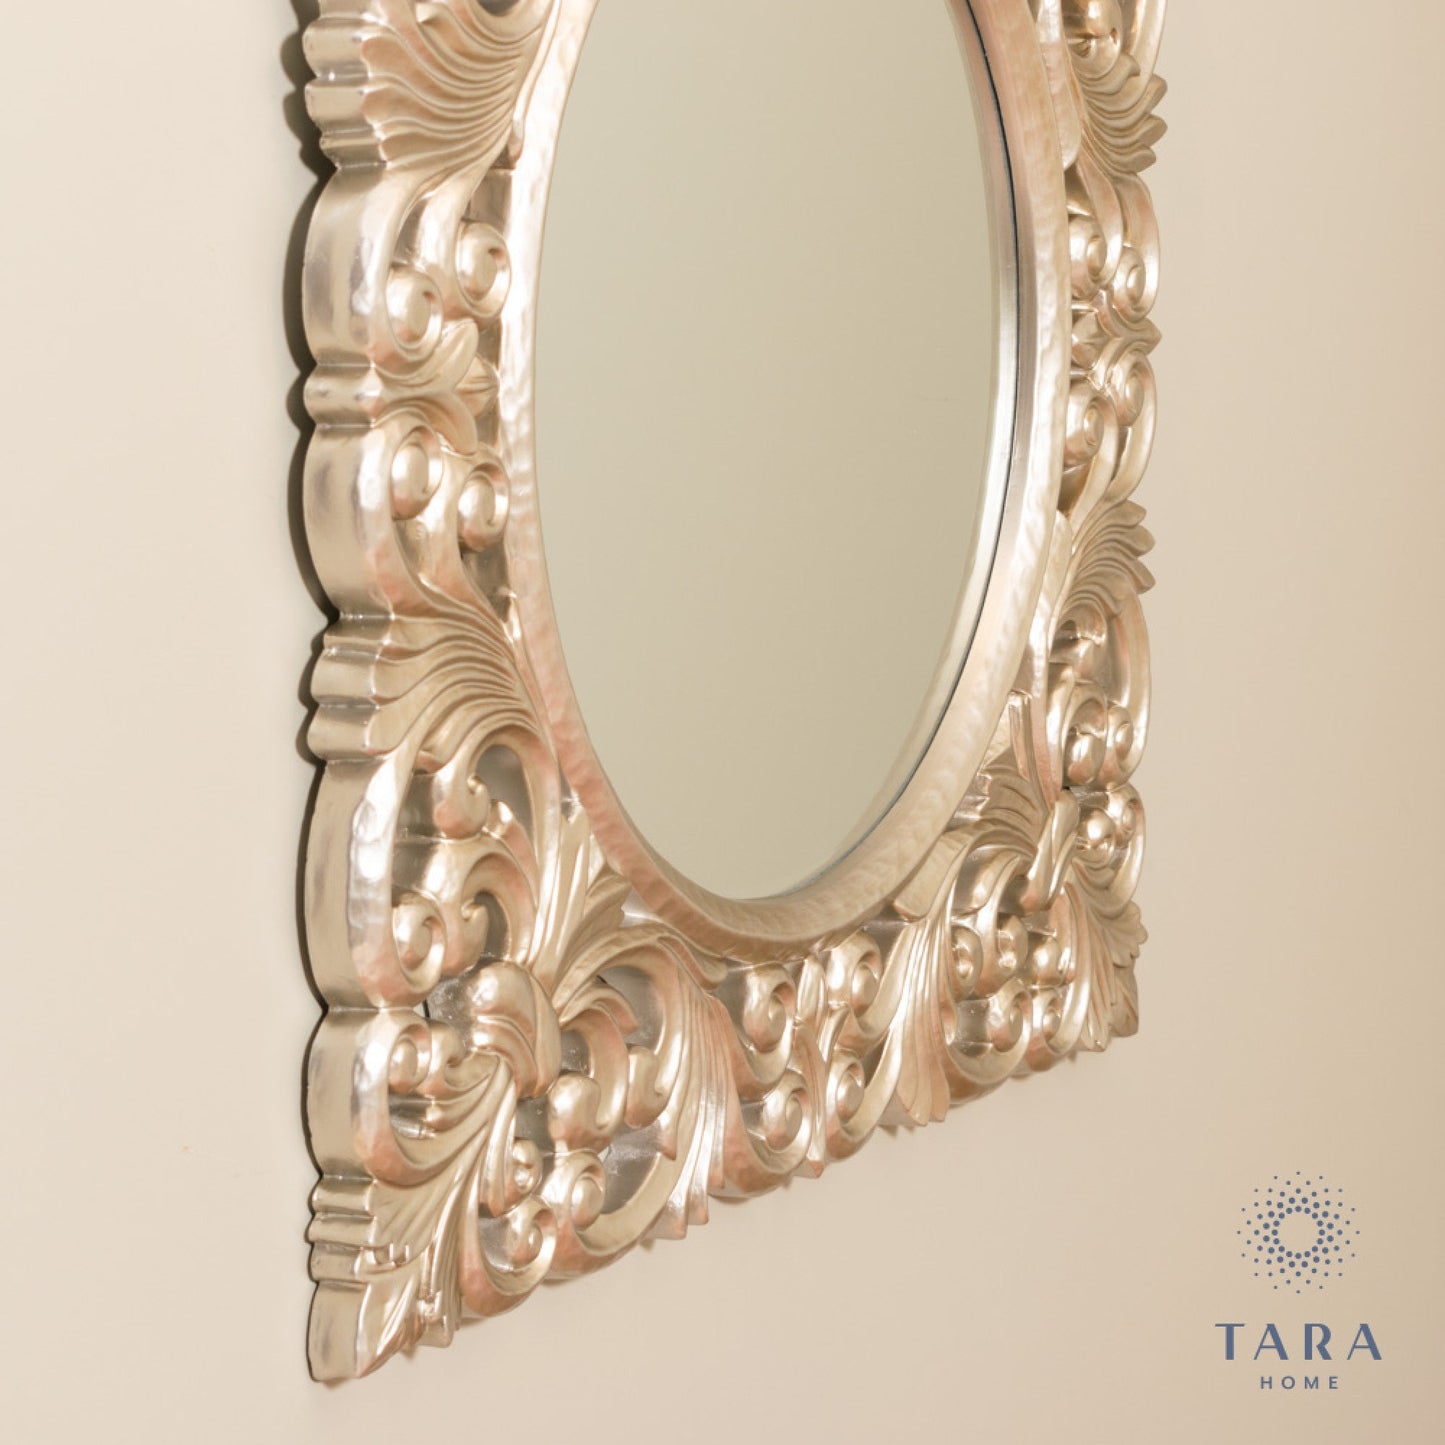 Varia  Baroque square mirror  90 x 90 cm  champagne silver